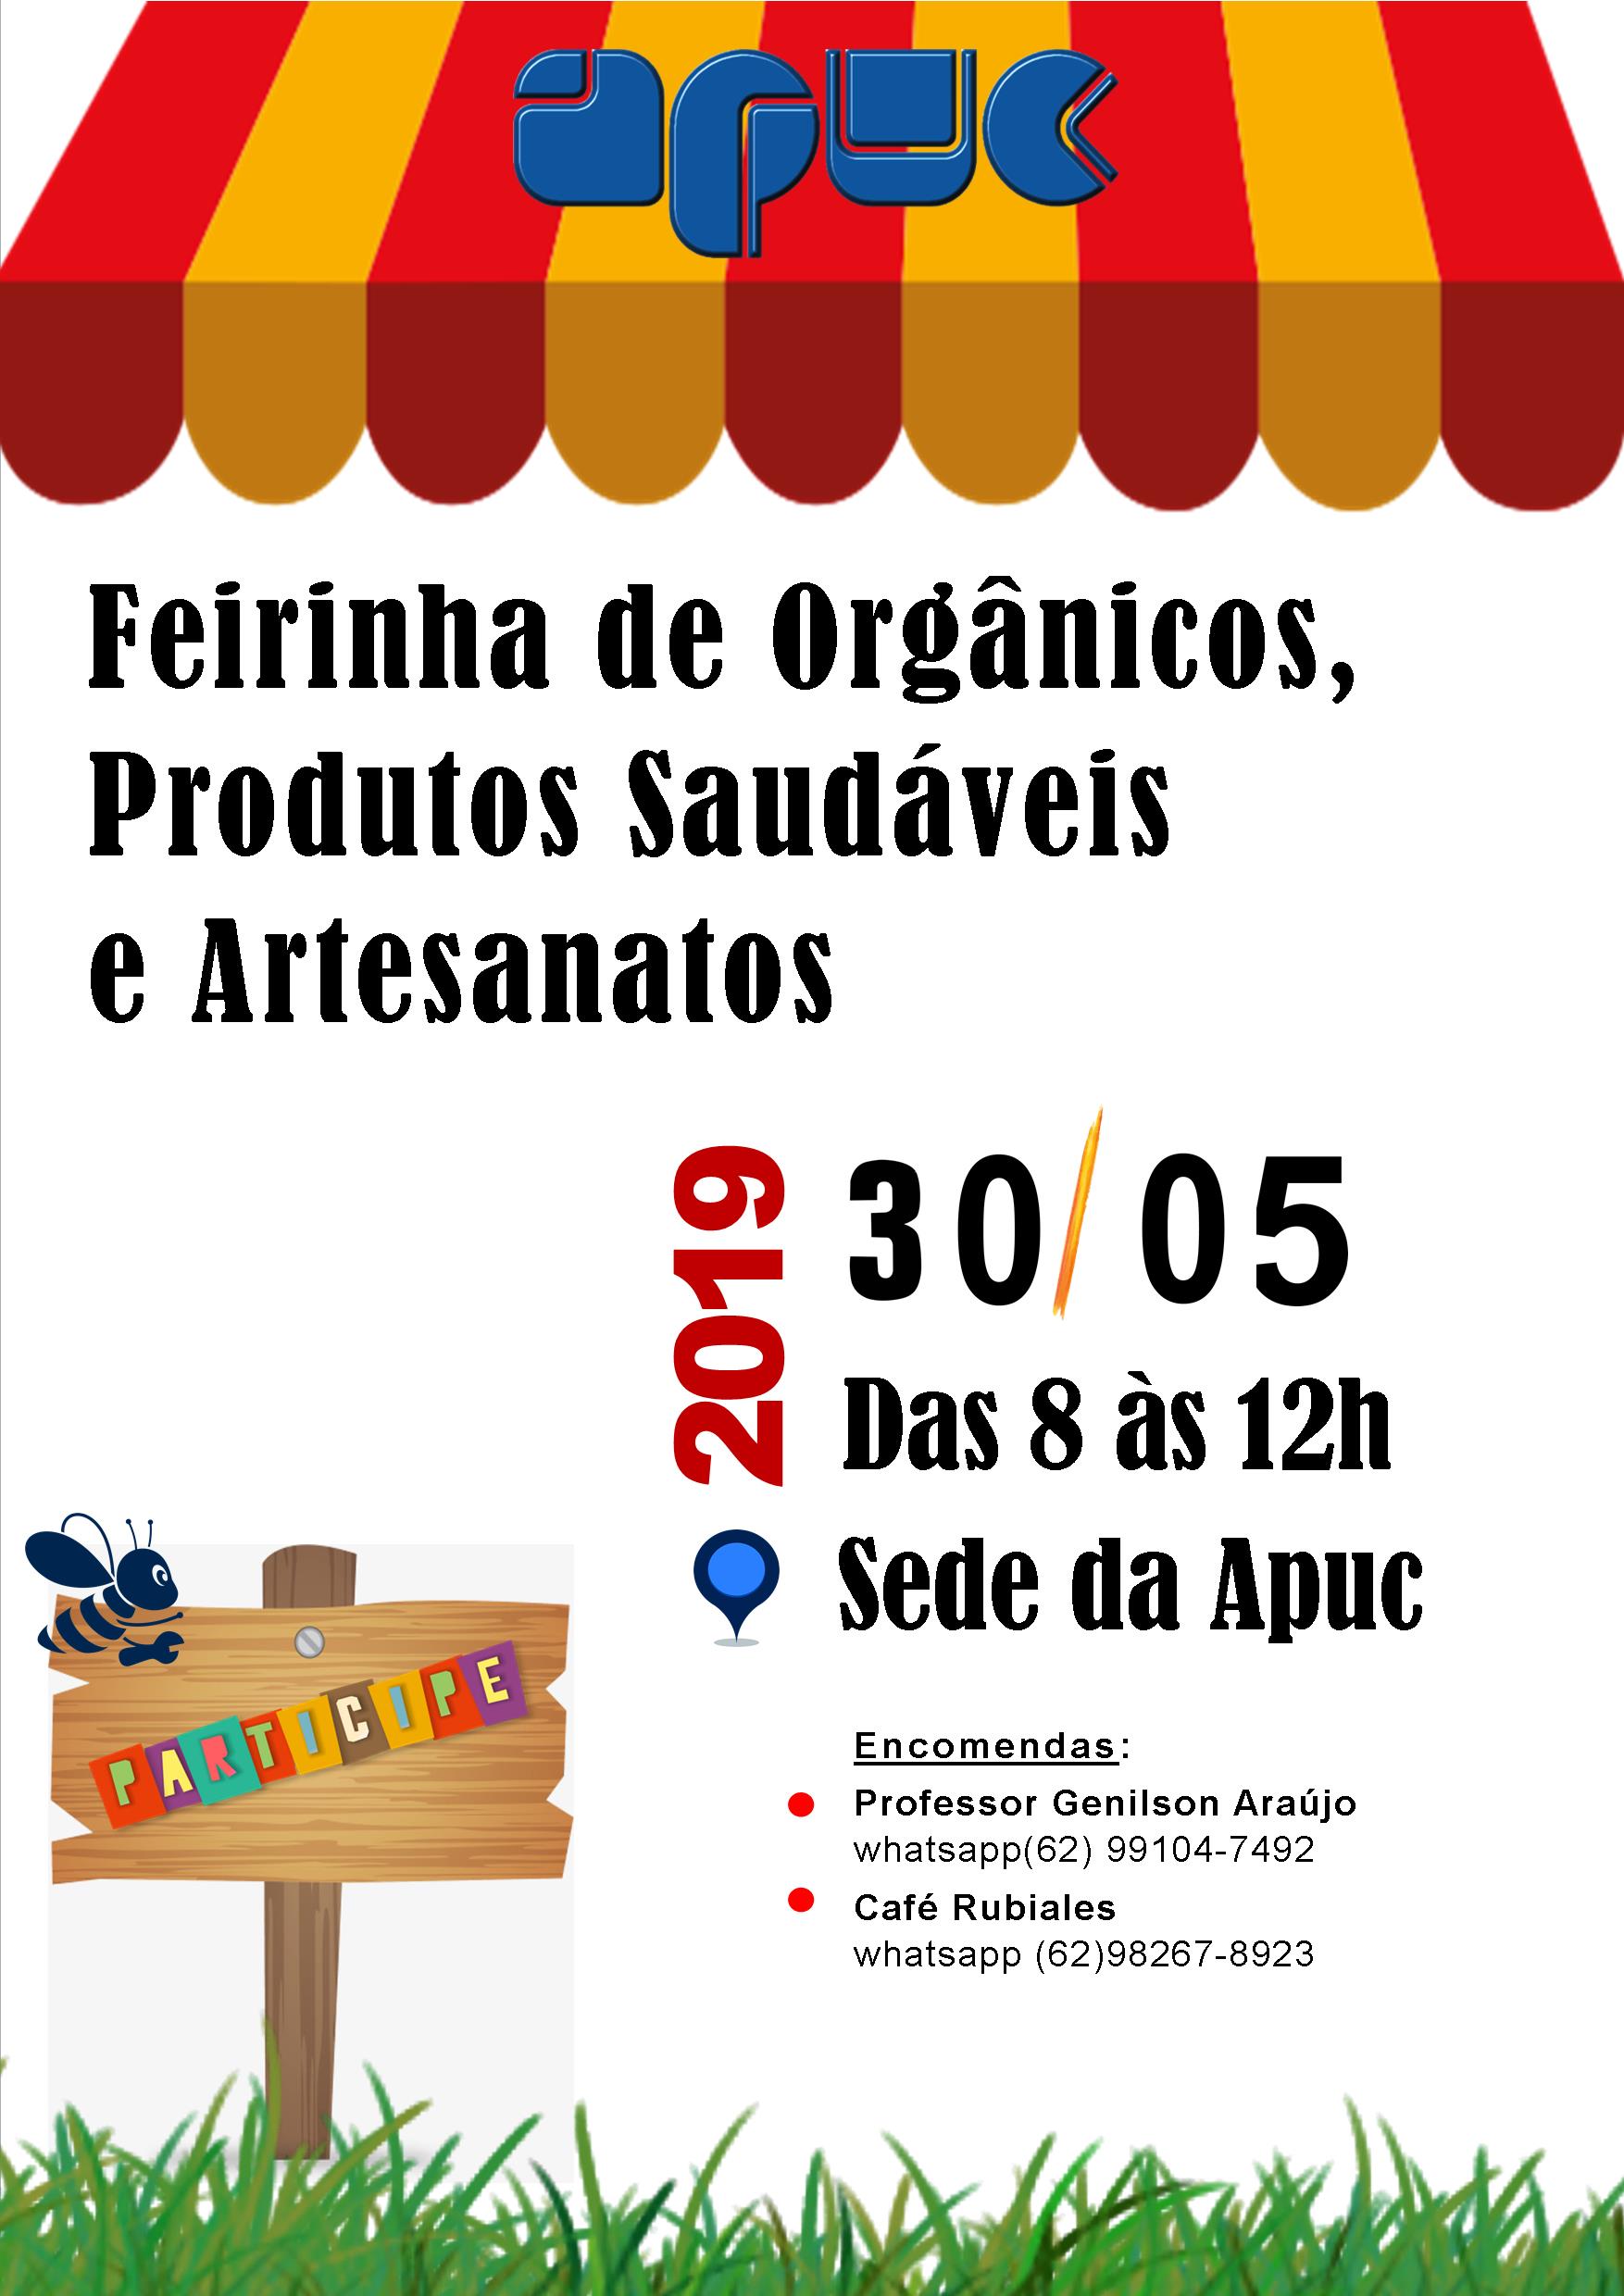 07.05.2019 Feirinha de Organicos Produtos Saudaveis e Artesanatos dia 30